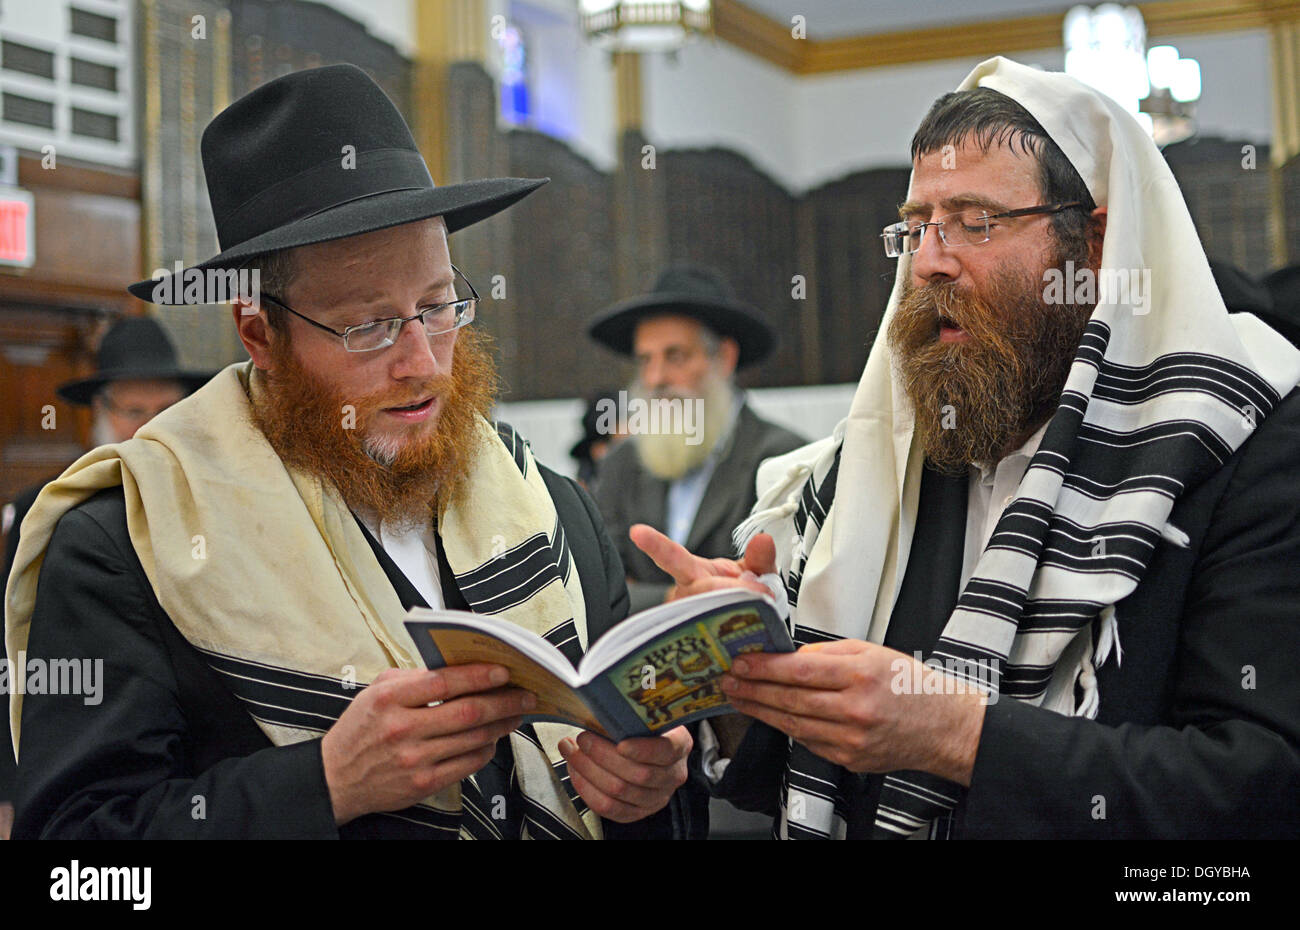 Religiöse jüdische Männer beten Bris Preisverleihung in Brooklyn, New York. Die Moel ist auf der rechten Seite, Vater auf der linken Seite. Stockfoto